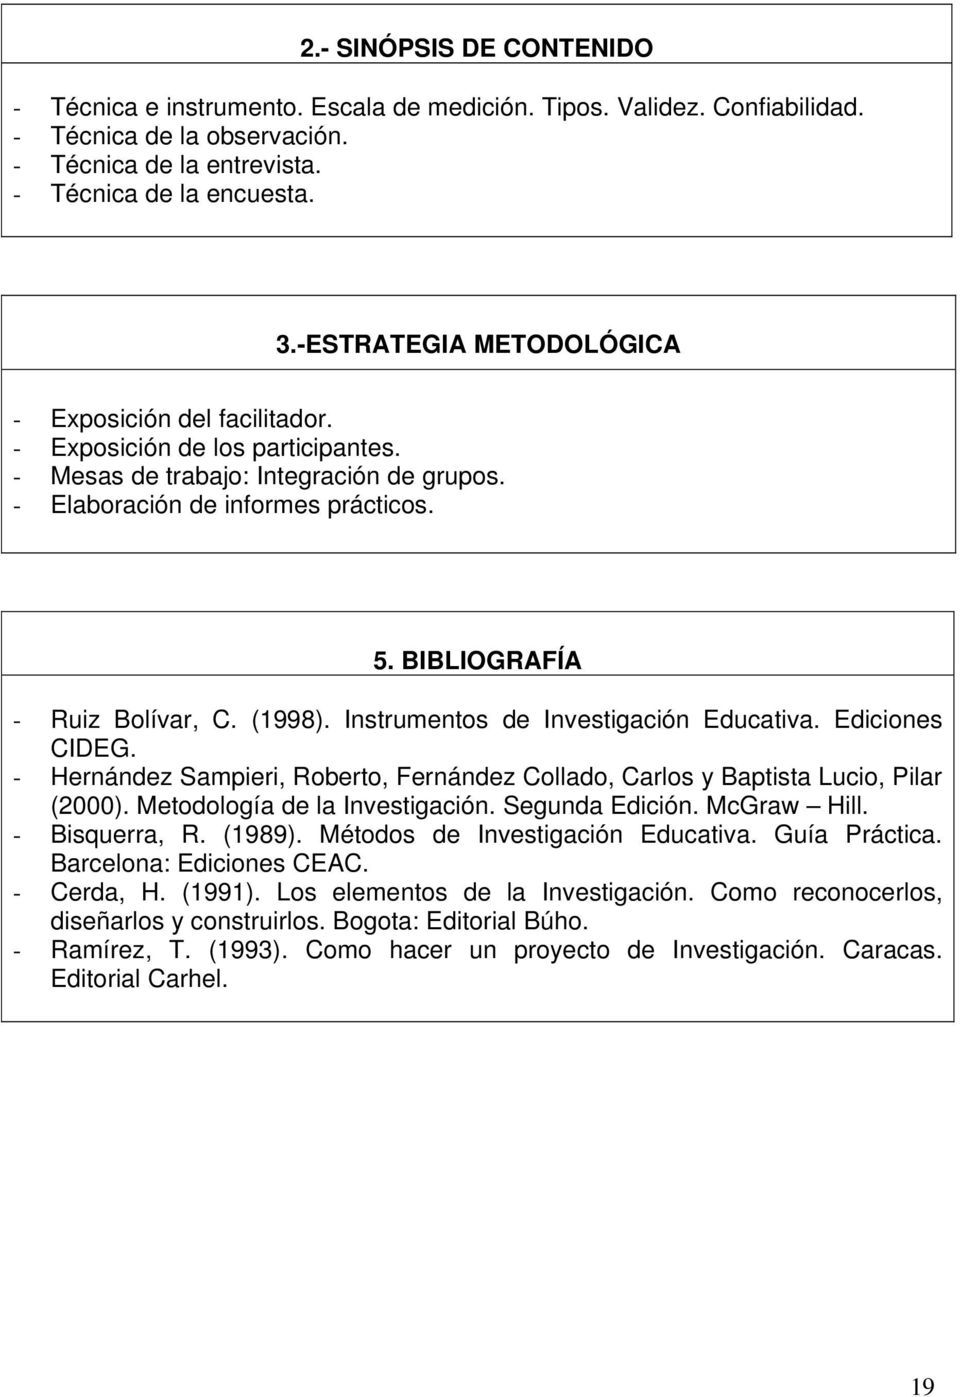 BIBLIOGRAFÍA - Ruiz Bolívar, C. (1998). Instrumentos de Investigación Educativa. Ediciones CIDEG. - Hernández Sampieri, Roberto, Fernández Collado, Carlos y Baptista Lucio, Pilar (2000).